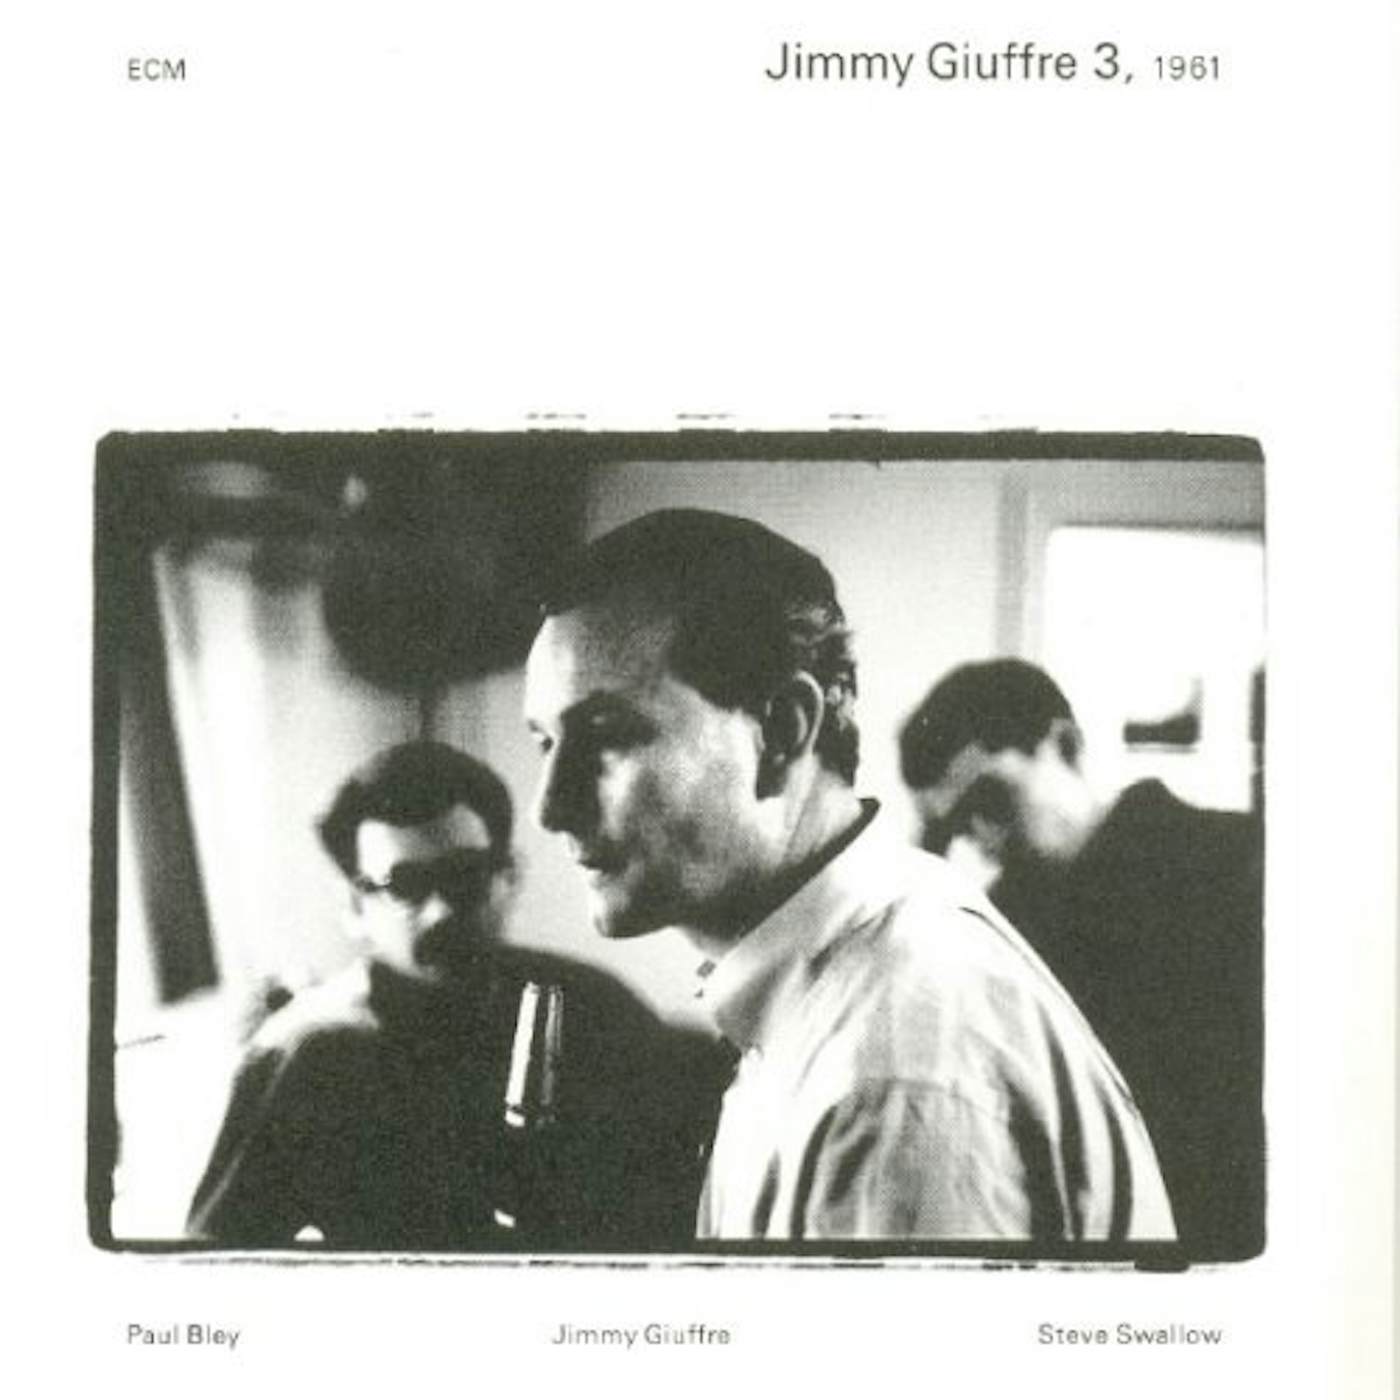 JIMMY GIUFFRE 3 1961 Vinyl Record